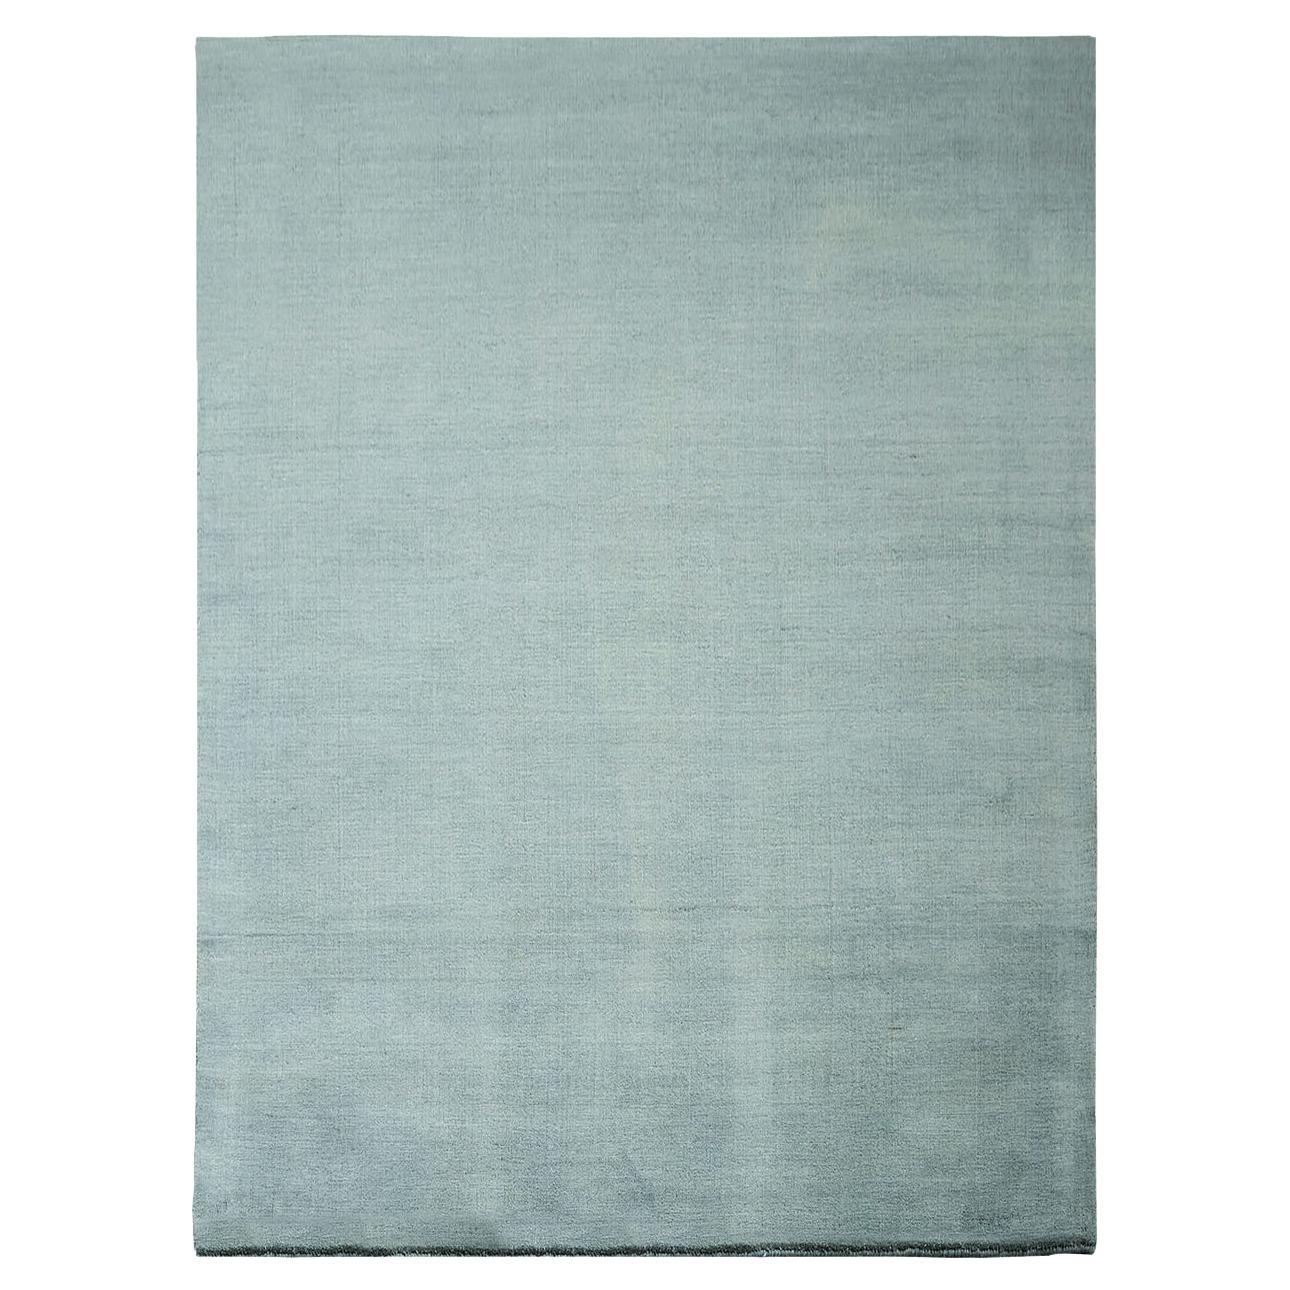 Verte Grey Earth Carpet by Massimo Copenhagen